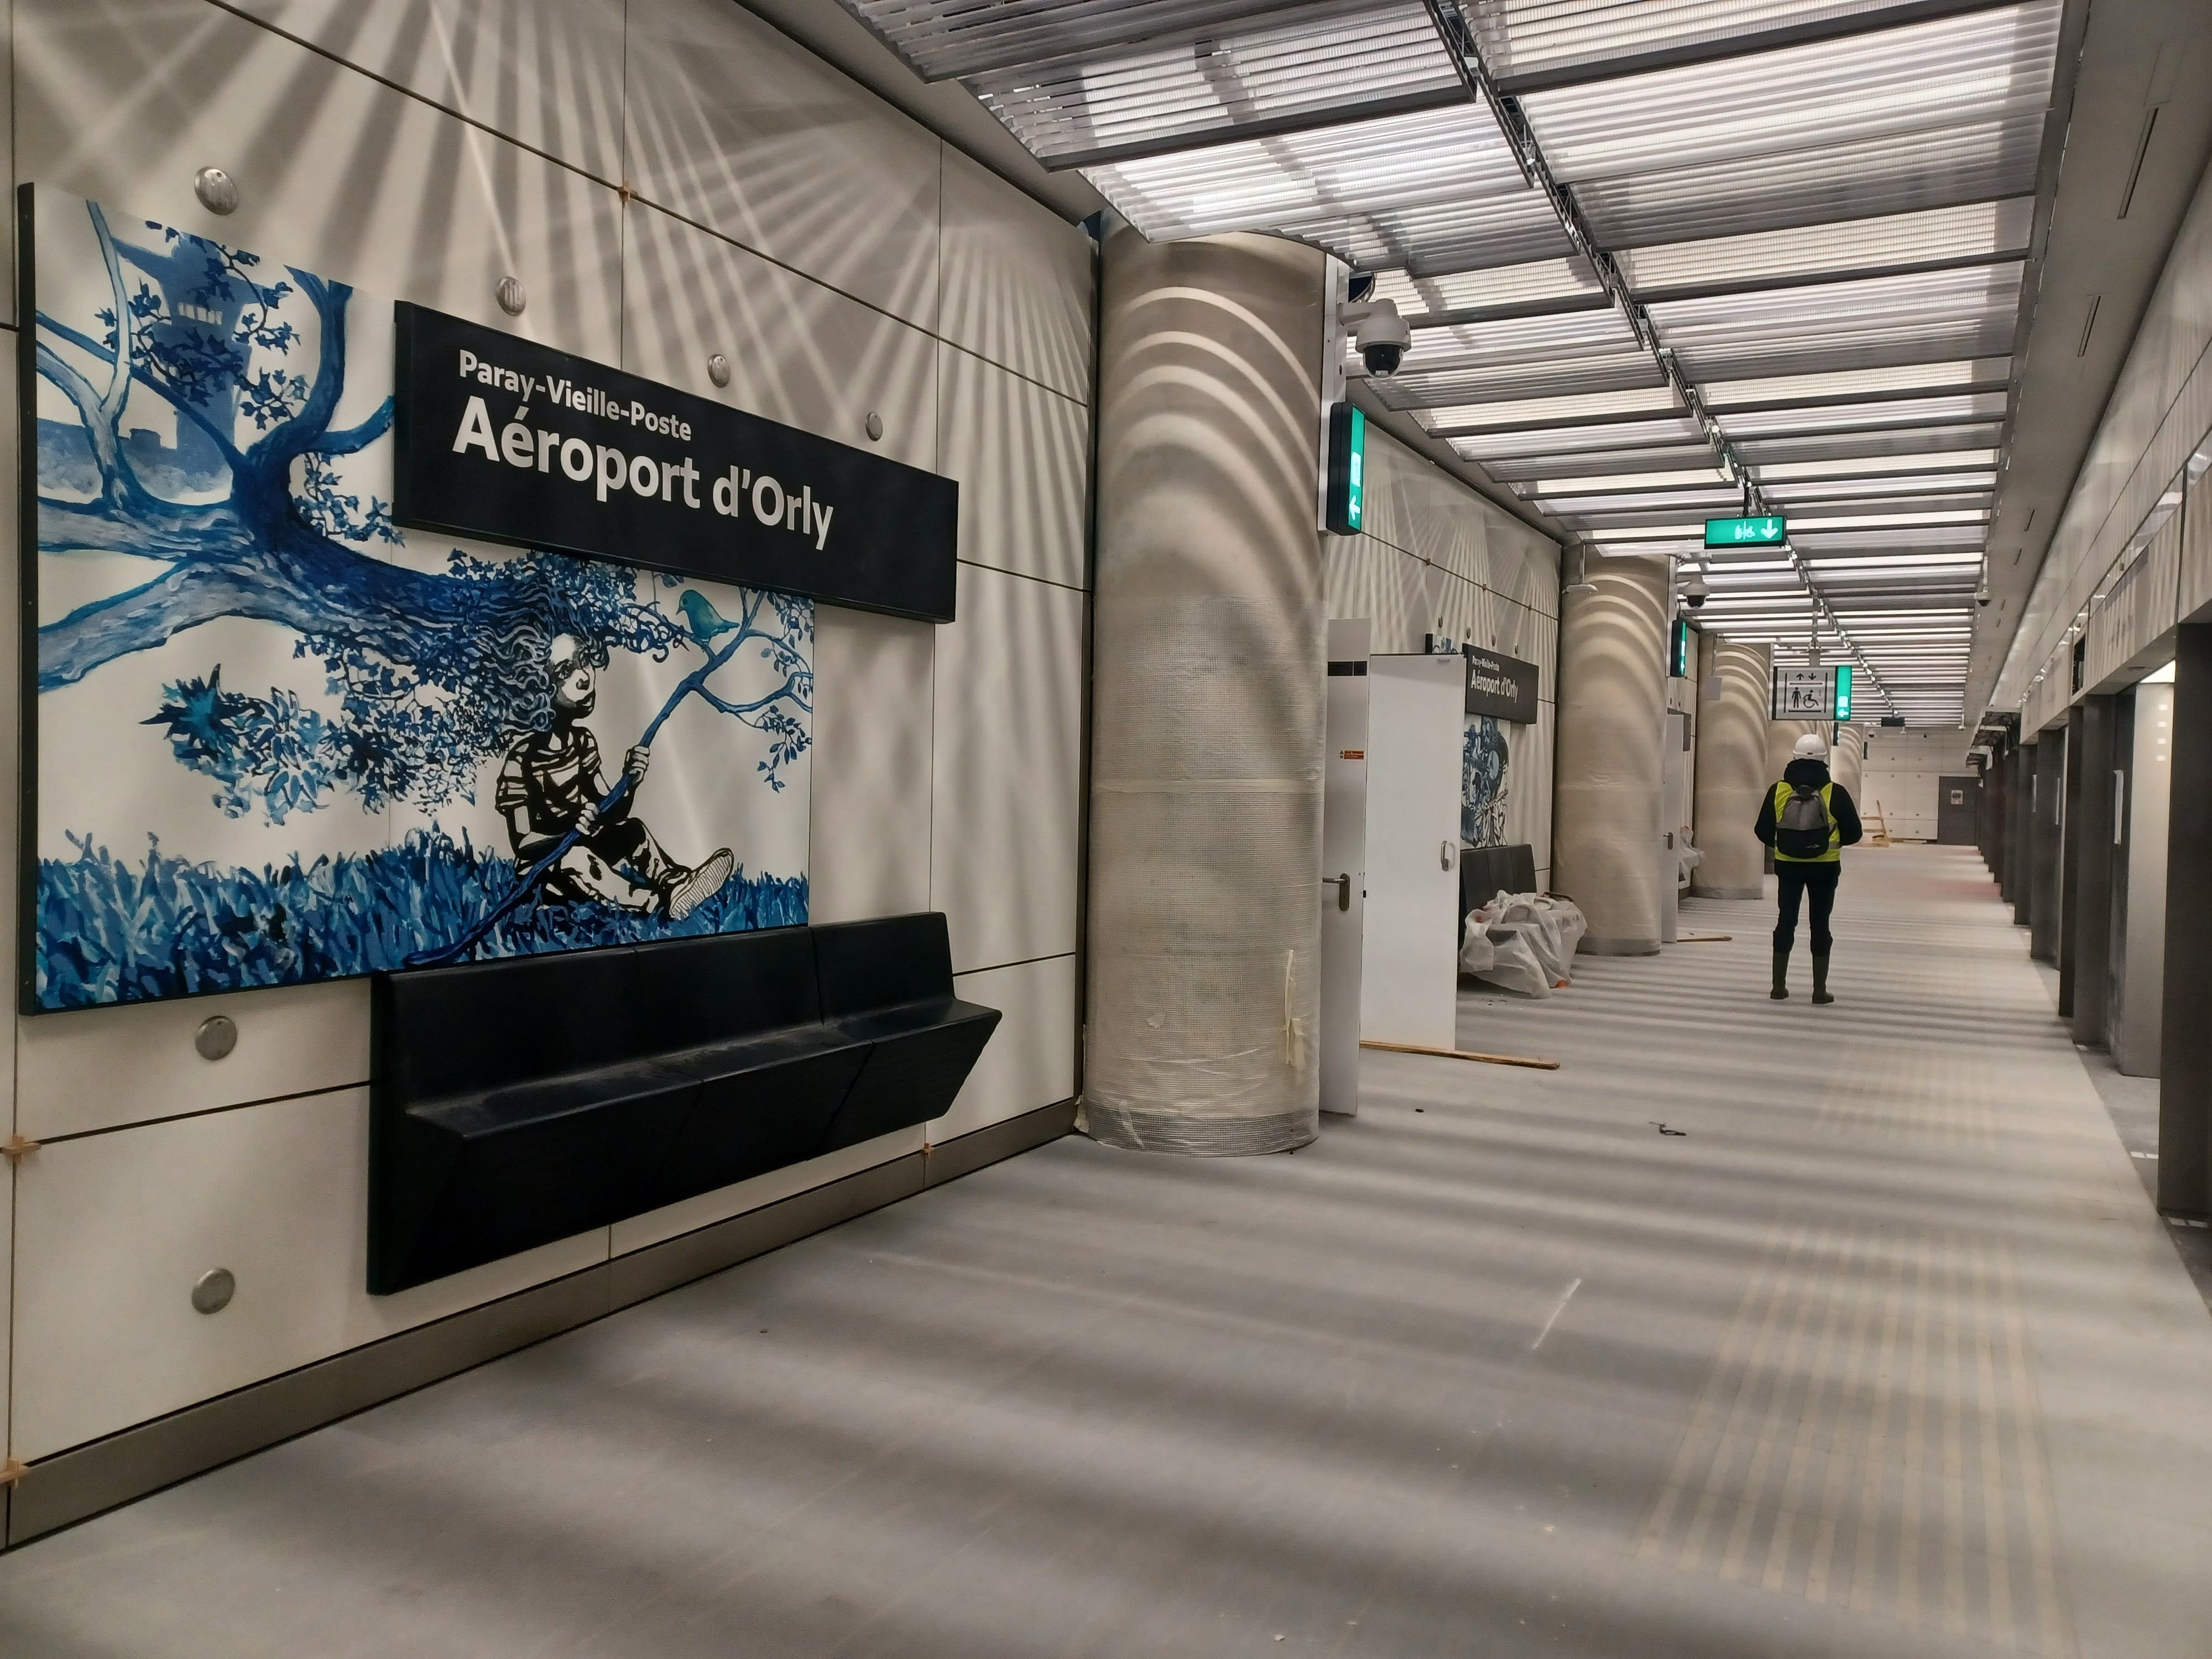 La gare Aéroport d'Orly, sur la ligne 14. Elle sera inaugurée, comme tout le prolongement sud et nord du métro automatique, en juin prochain.